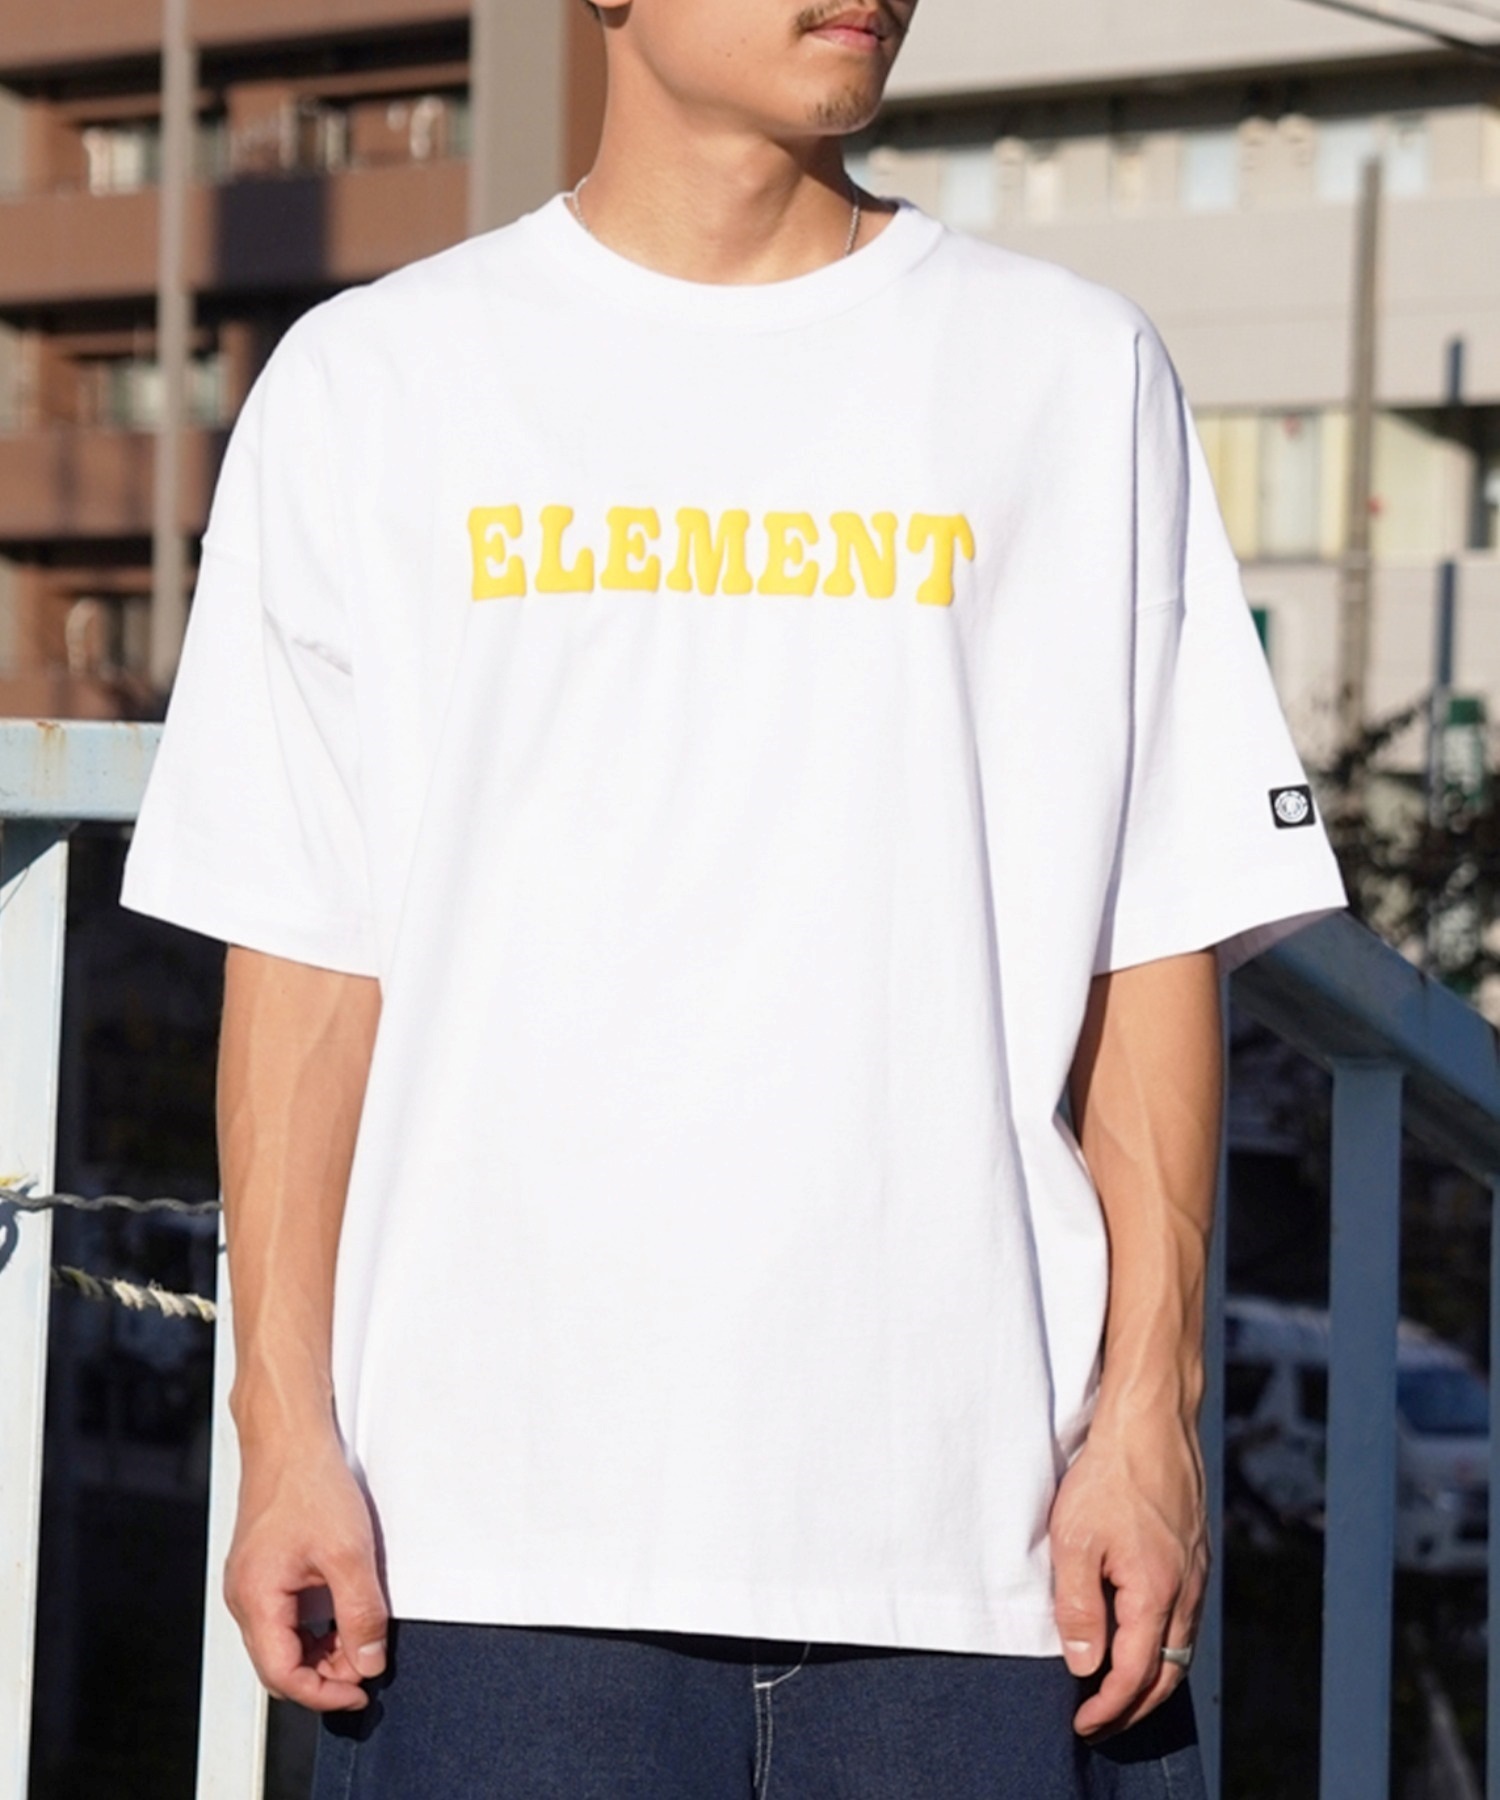 【マトメガイ対象】ELEMENT エレメント メンズ 半袖 Tシャツ バックプリント オーバーサイズ クルーネック アーチロゴ フラワーモチーフ BE021-240(GRN-M)